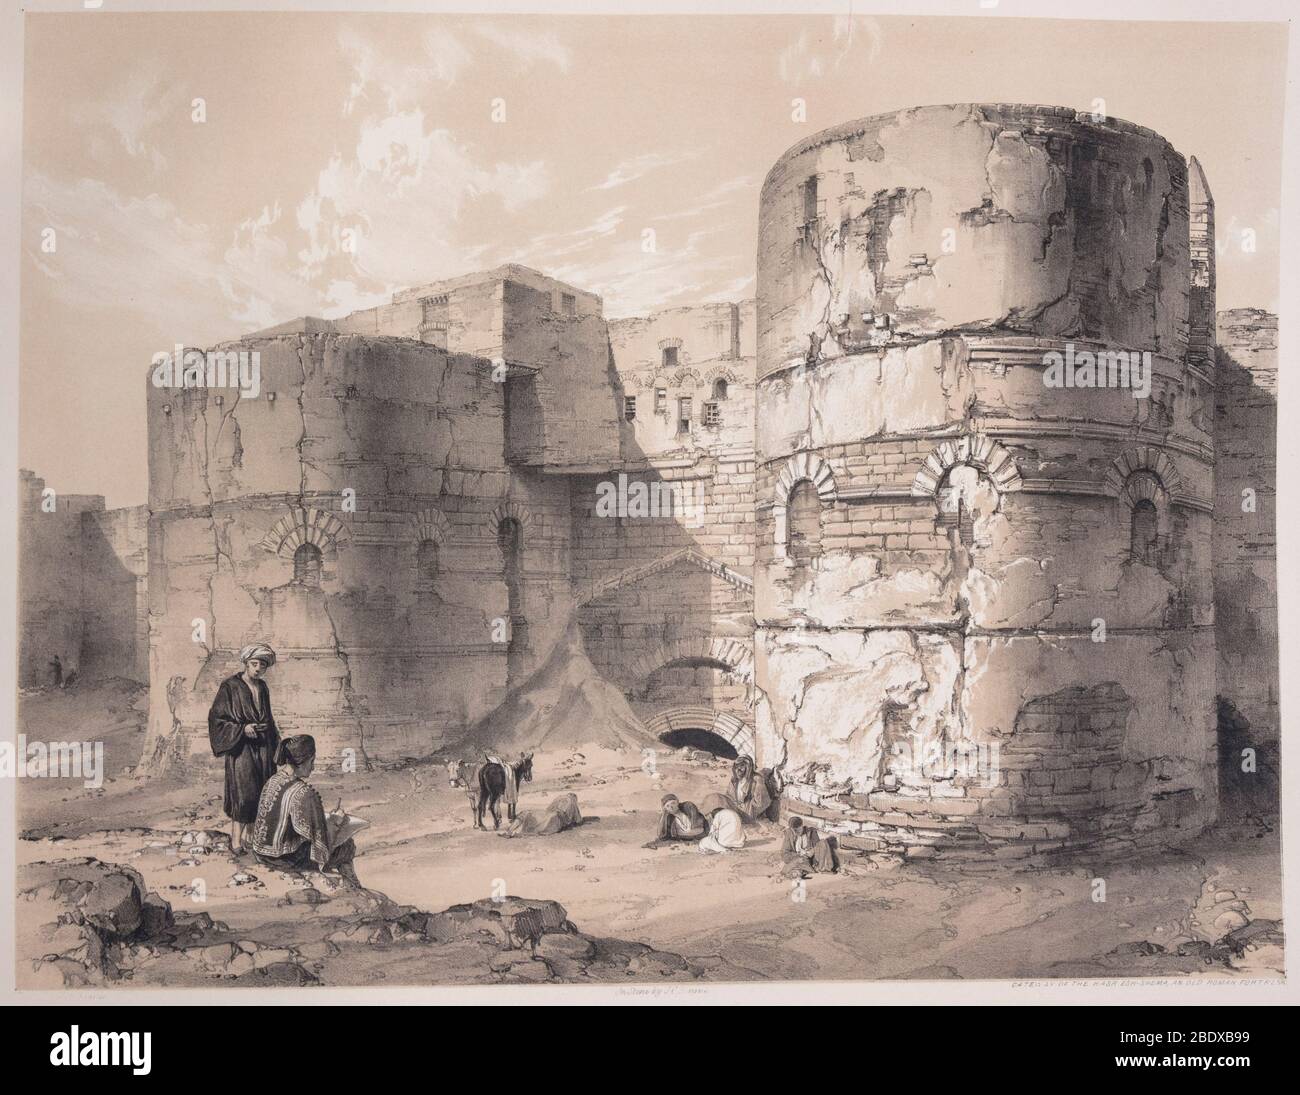 Porte d'entrée du Qasr Esh-shema, ancienne forteresse romaine, Robert Hay, illustrations du Caire, Londres, 1840 Banque D'Images